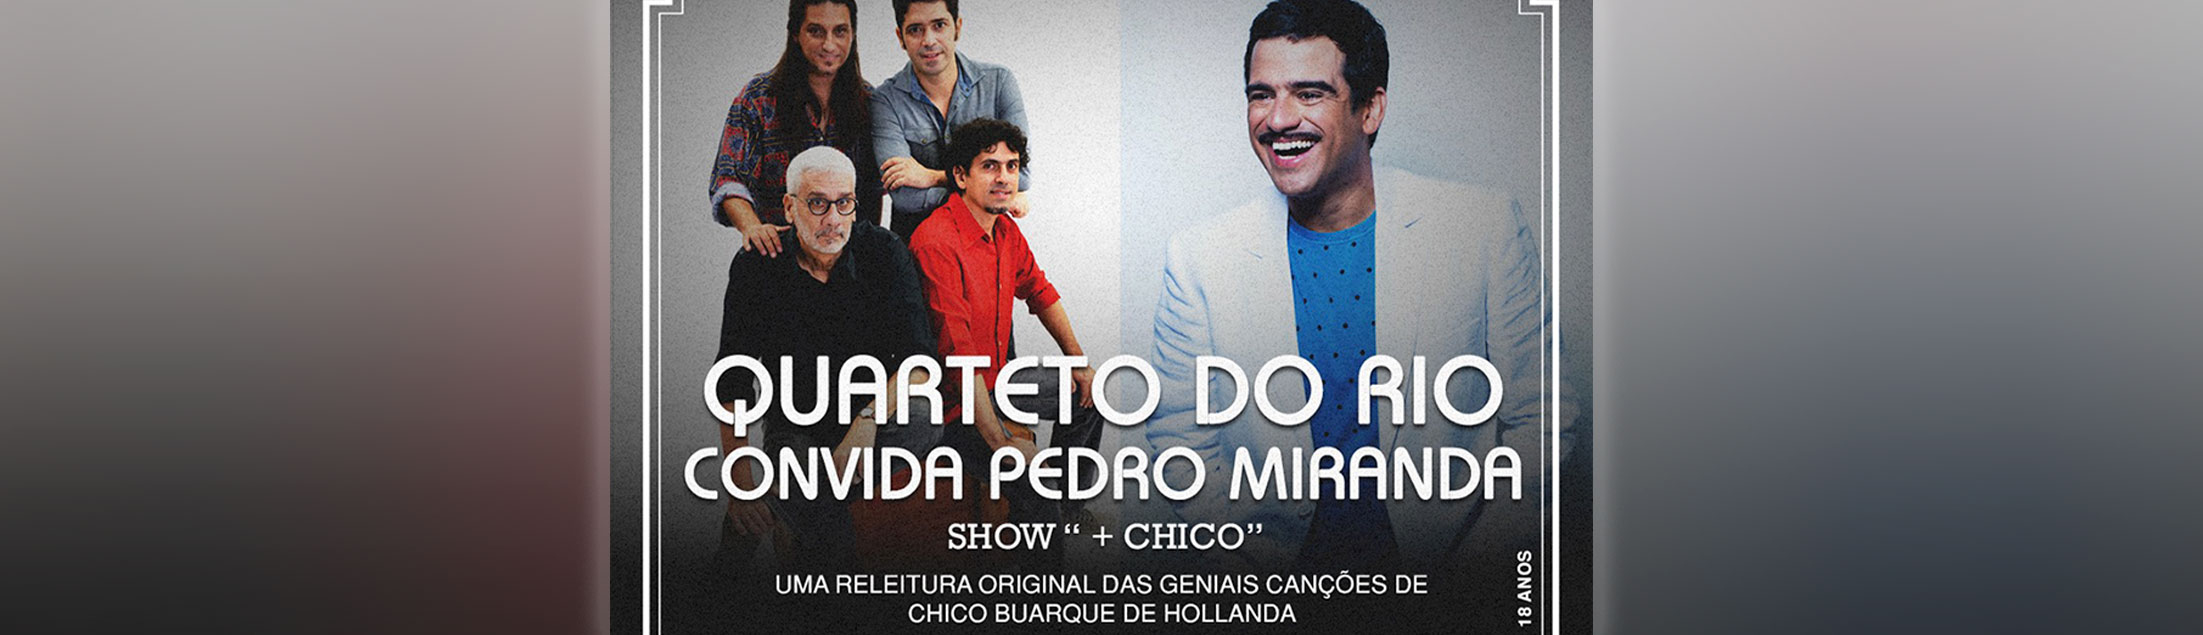 Quarteto do Rio convida Pedro Miranda no show '+ CHICO'